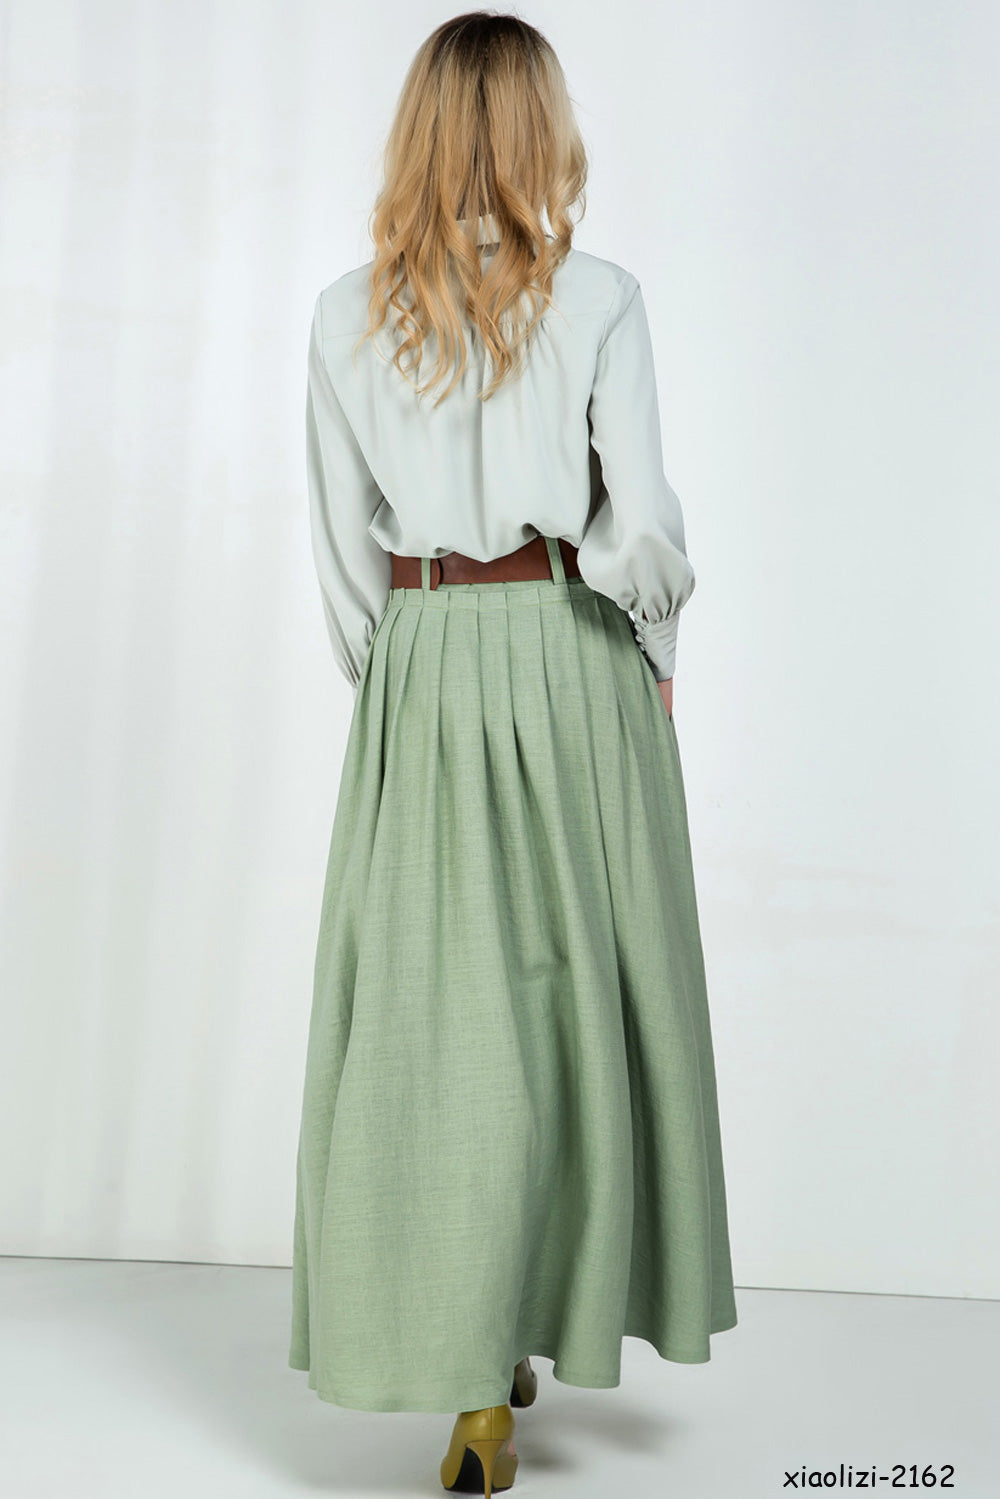 Vintage spired maxi skirt, green pleated skirt 2162#